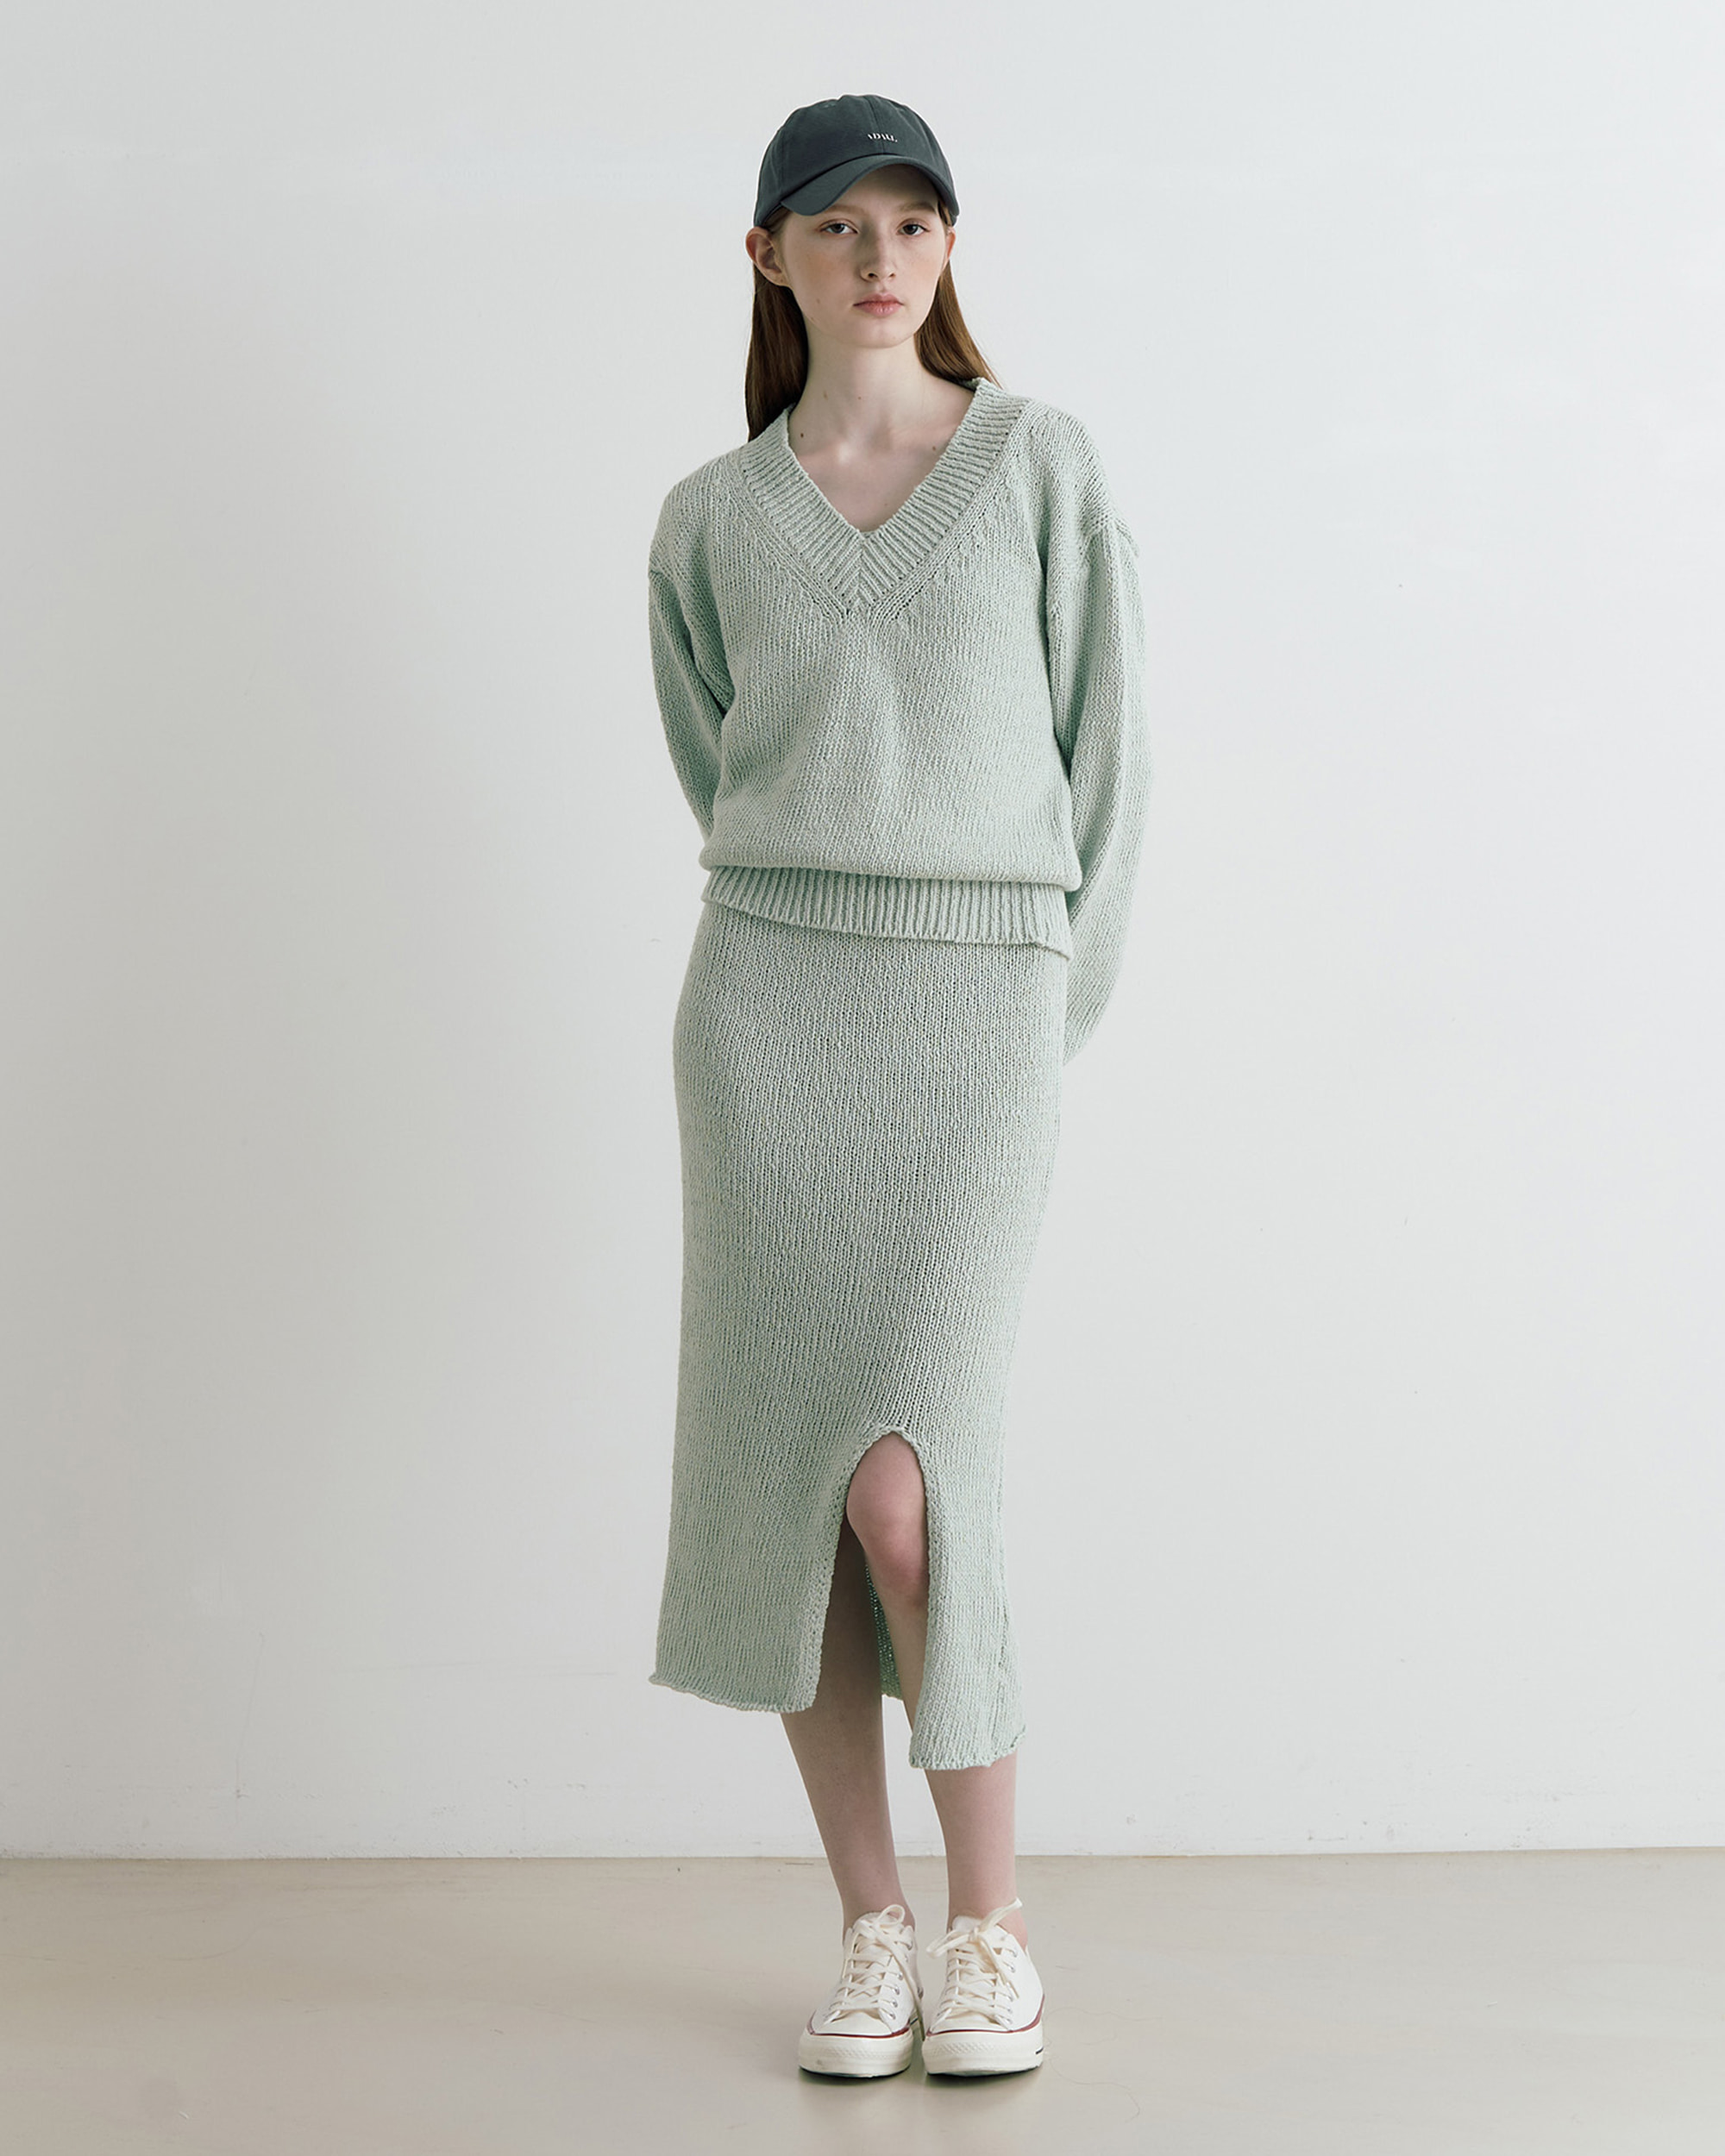 Snug daily knit dress set - mint